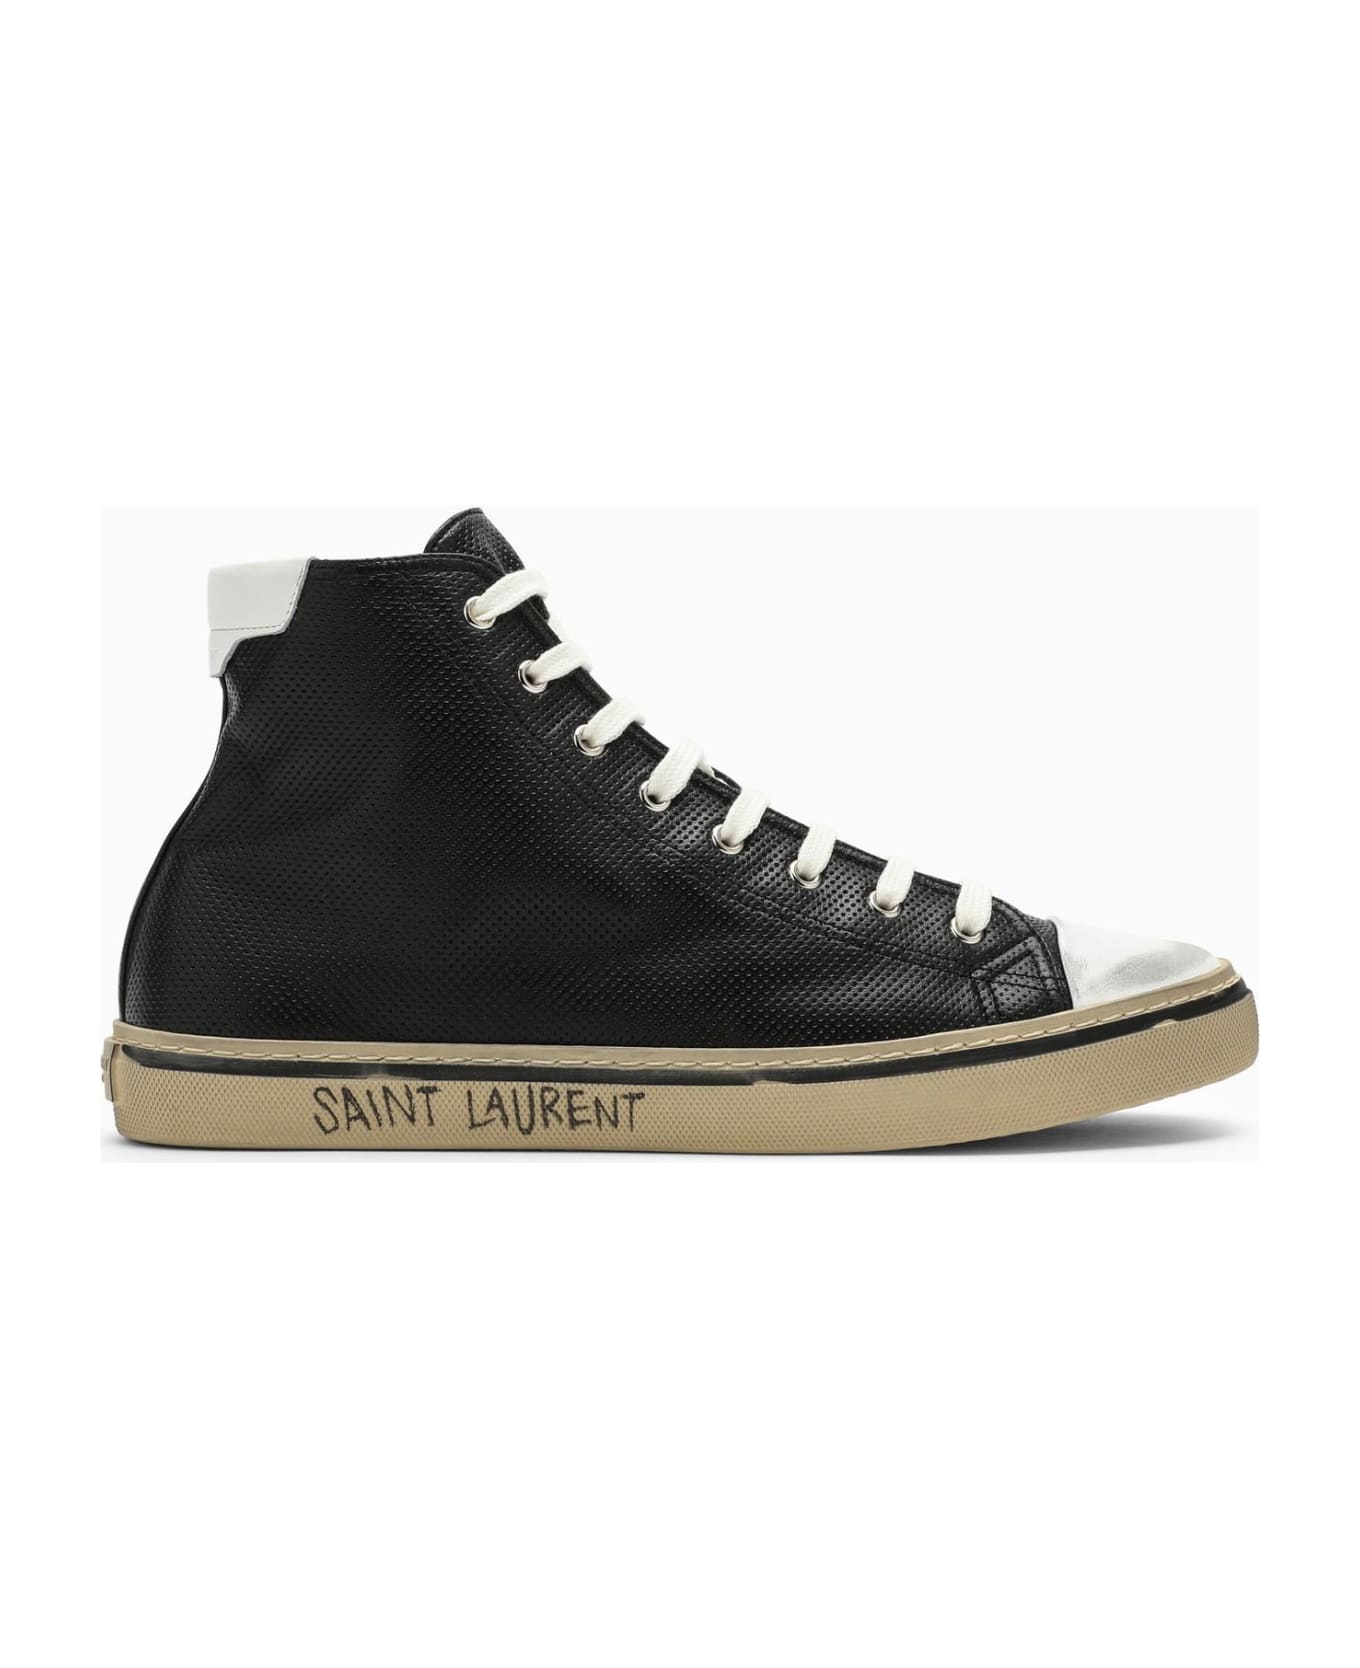 Saint Laurent Malibu Sneakers - Black